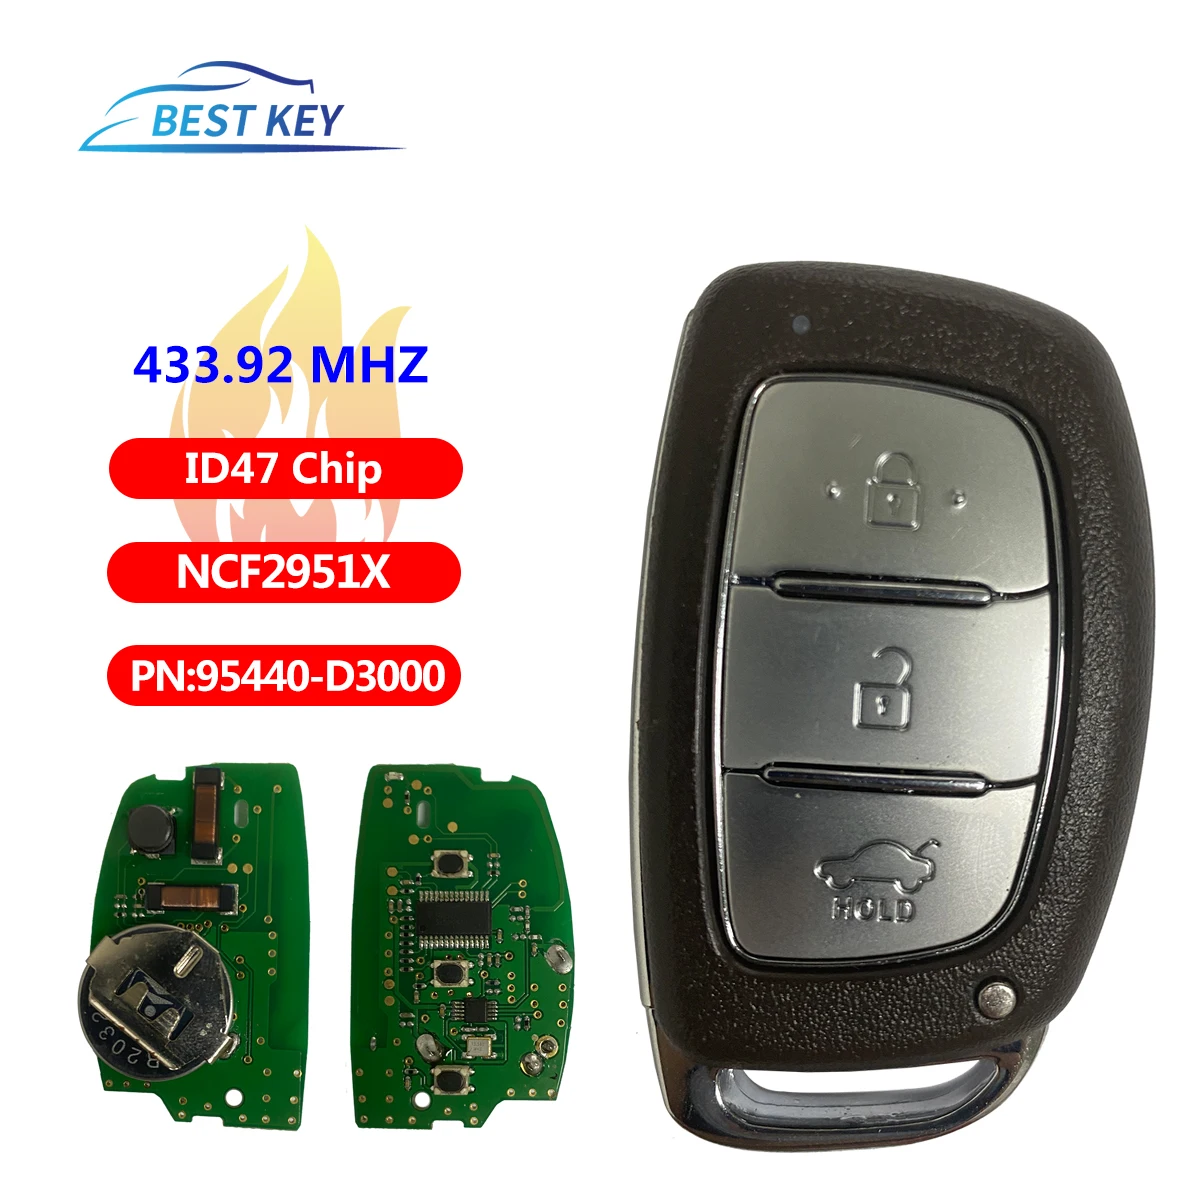 

BEST KEYKeyless go Smart Remote Car Key Fob With Emergency Key For Hyundai 433.92MHz FSK ID47 HITAG 3 NCF2951X PN: 95440-D3000